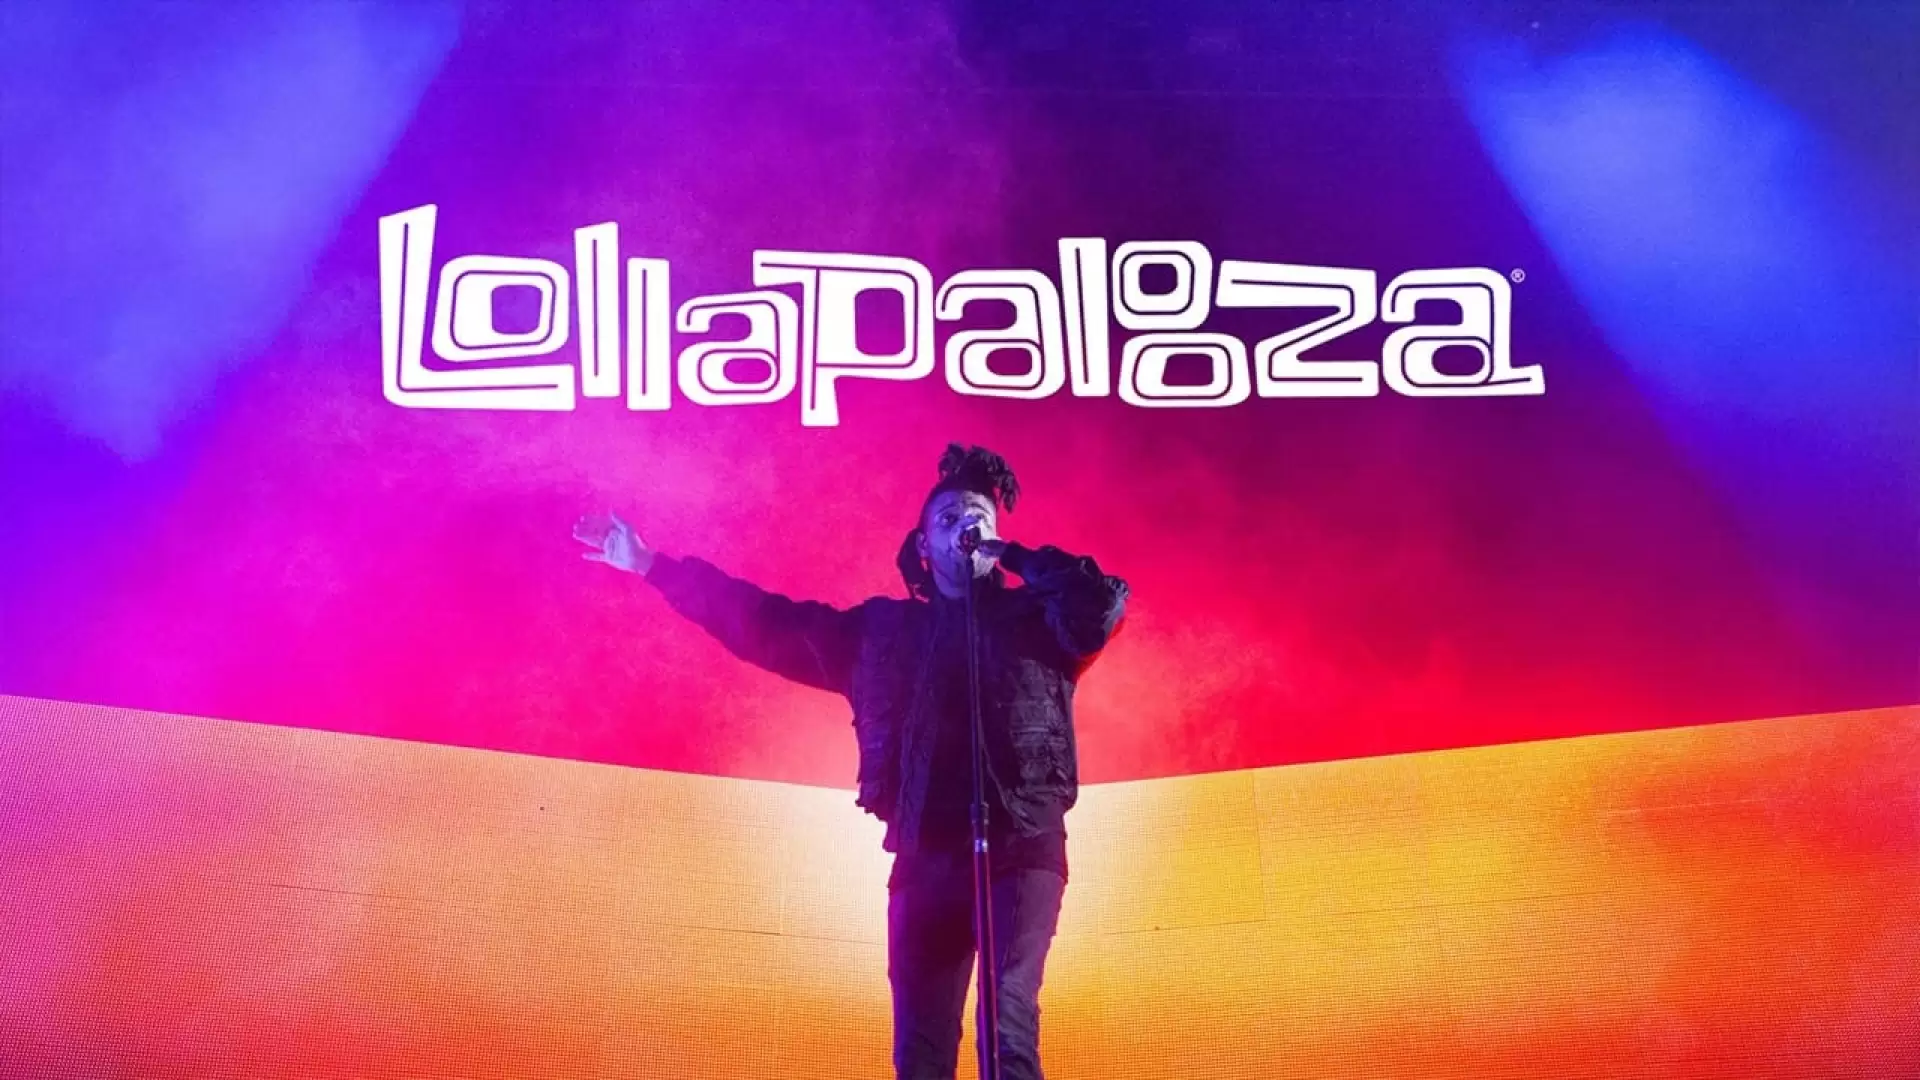 دانلود کنسرت The Weeknd – Lollapalooza 2017